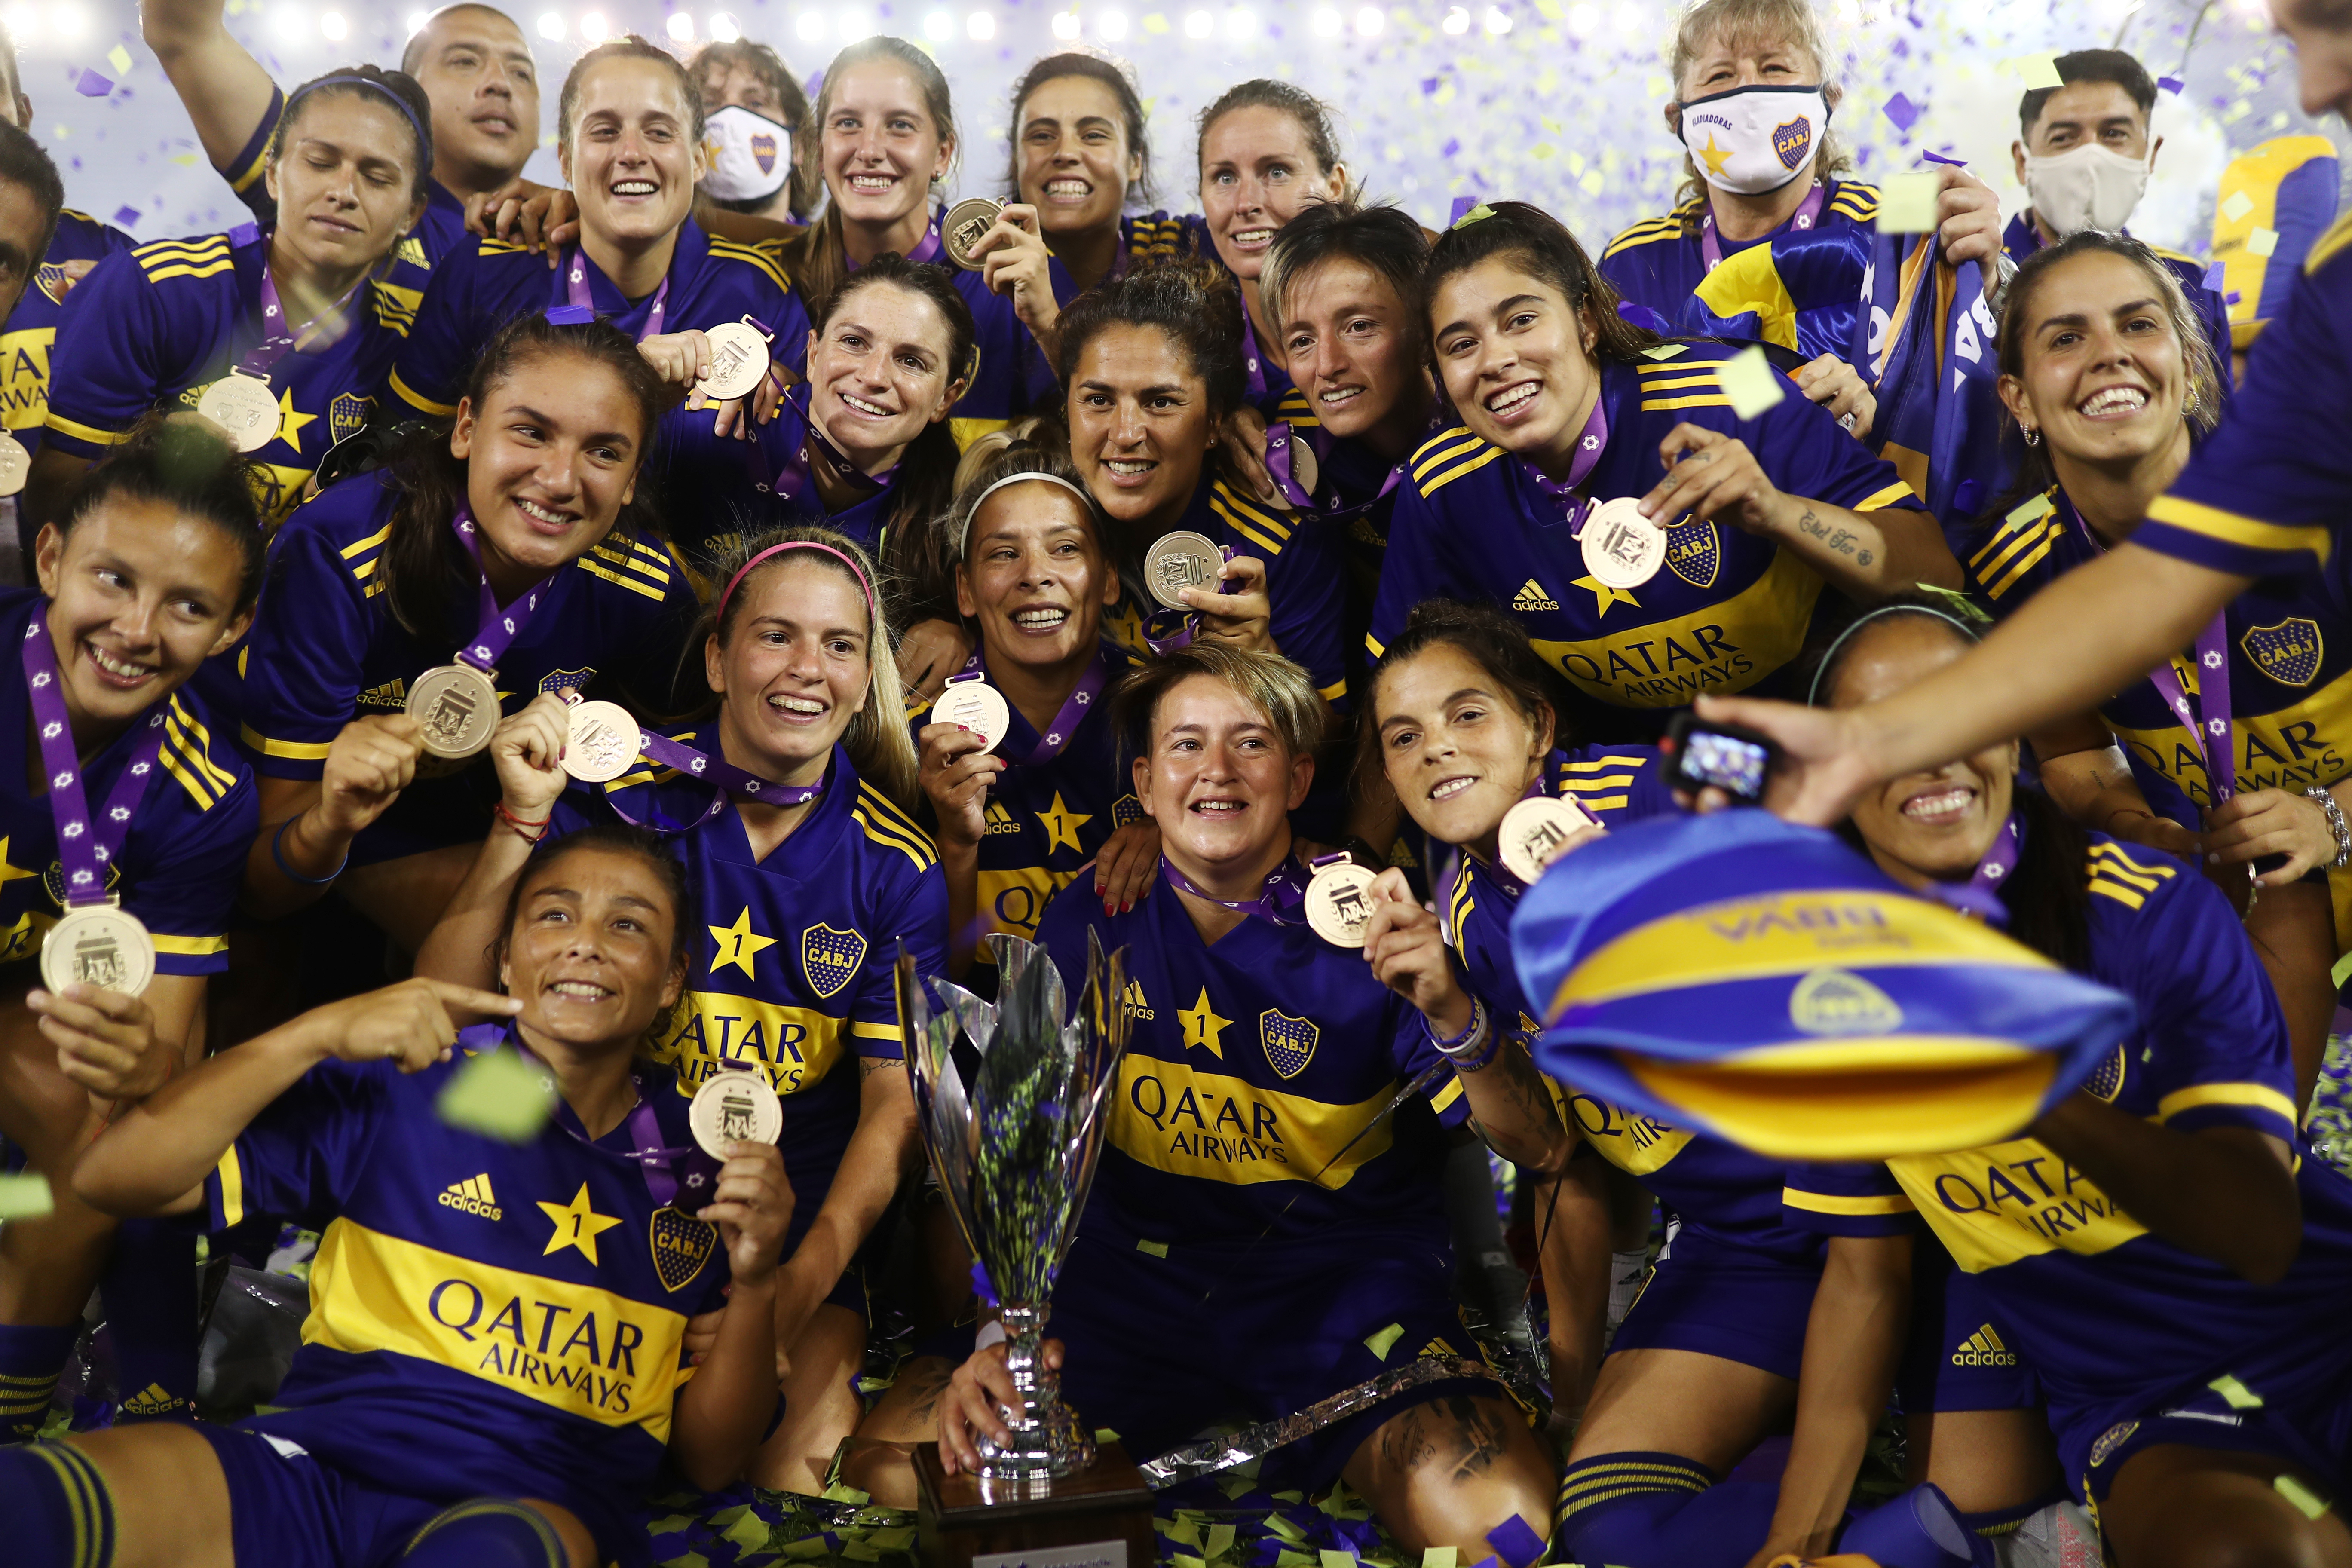 Boca arrolló 7-0 a River por la final del torneo femenino y es el primer campeón de la era profesional - Infobae